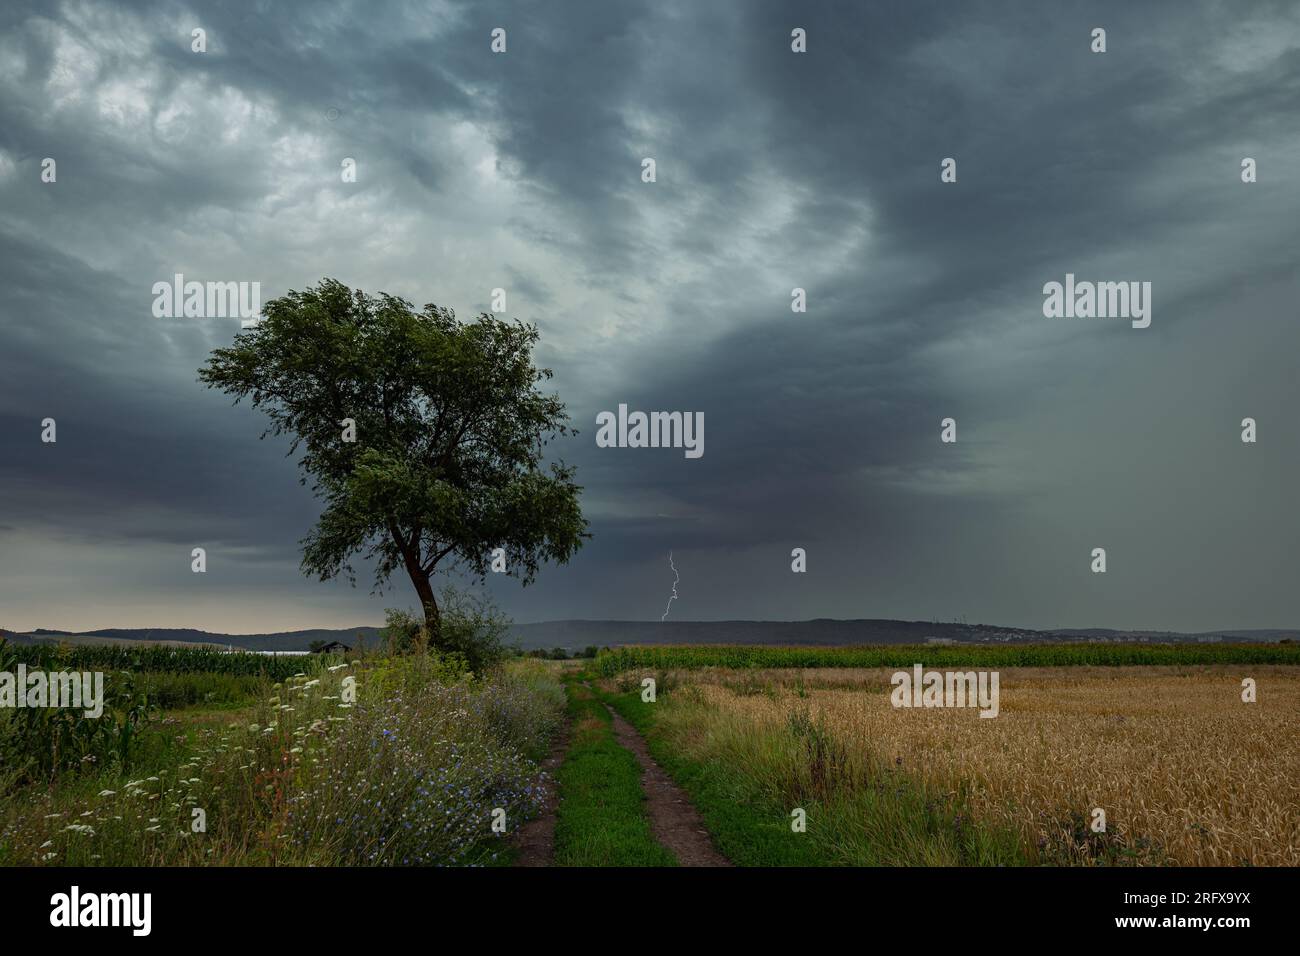 Image de paysage dramatique d'un arbre avec tempête de foudre en arrière-plan Banque D'Images